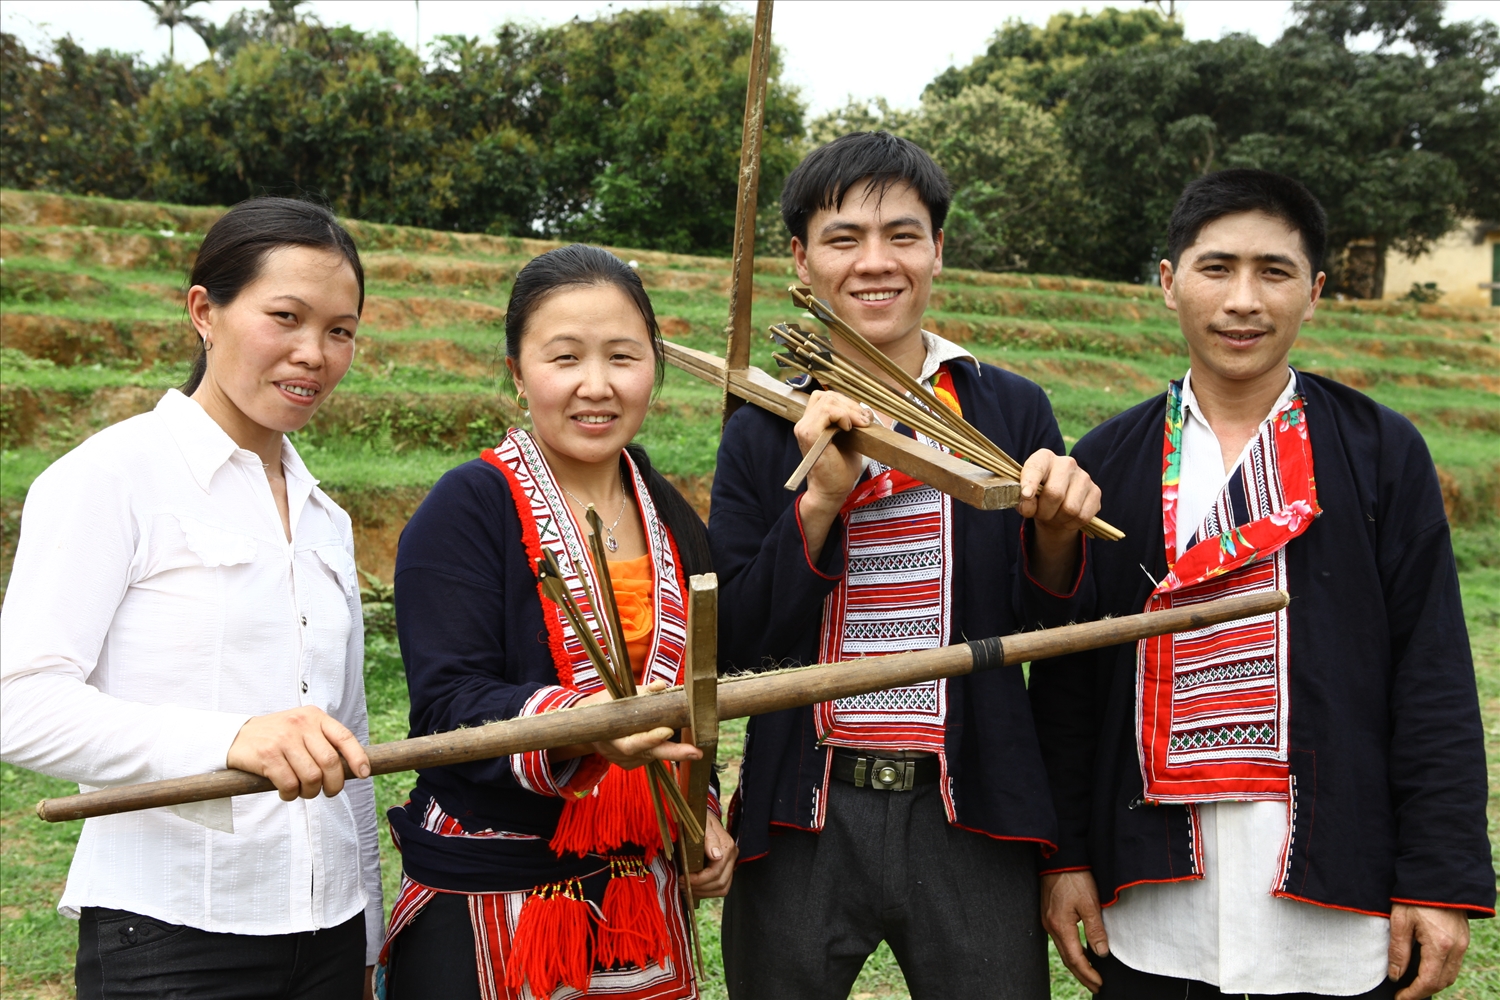 Gia đình thể thao Đặng Tài Tiến (ở giữa), thôn Cao Phạ, xã Minh Khương, huyện Hàm Yên, tỉnh Tuyên Quang